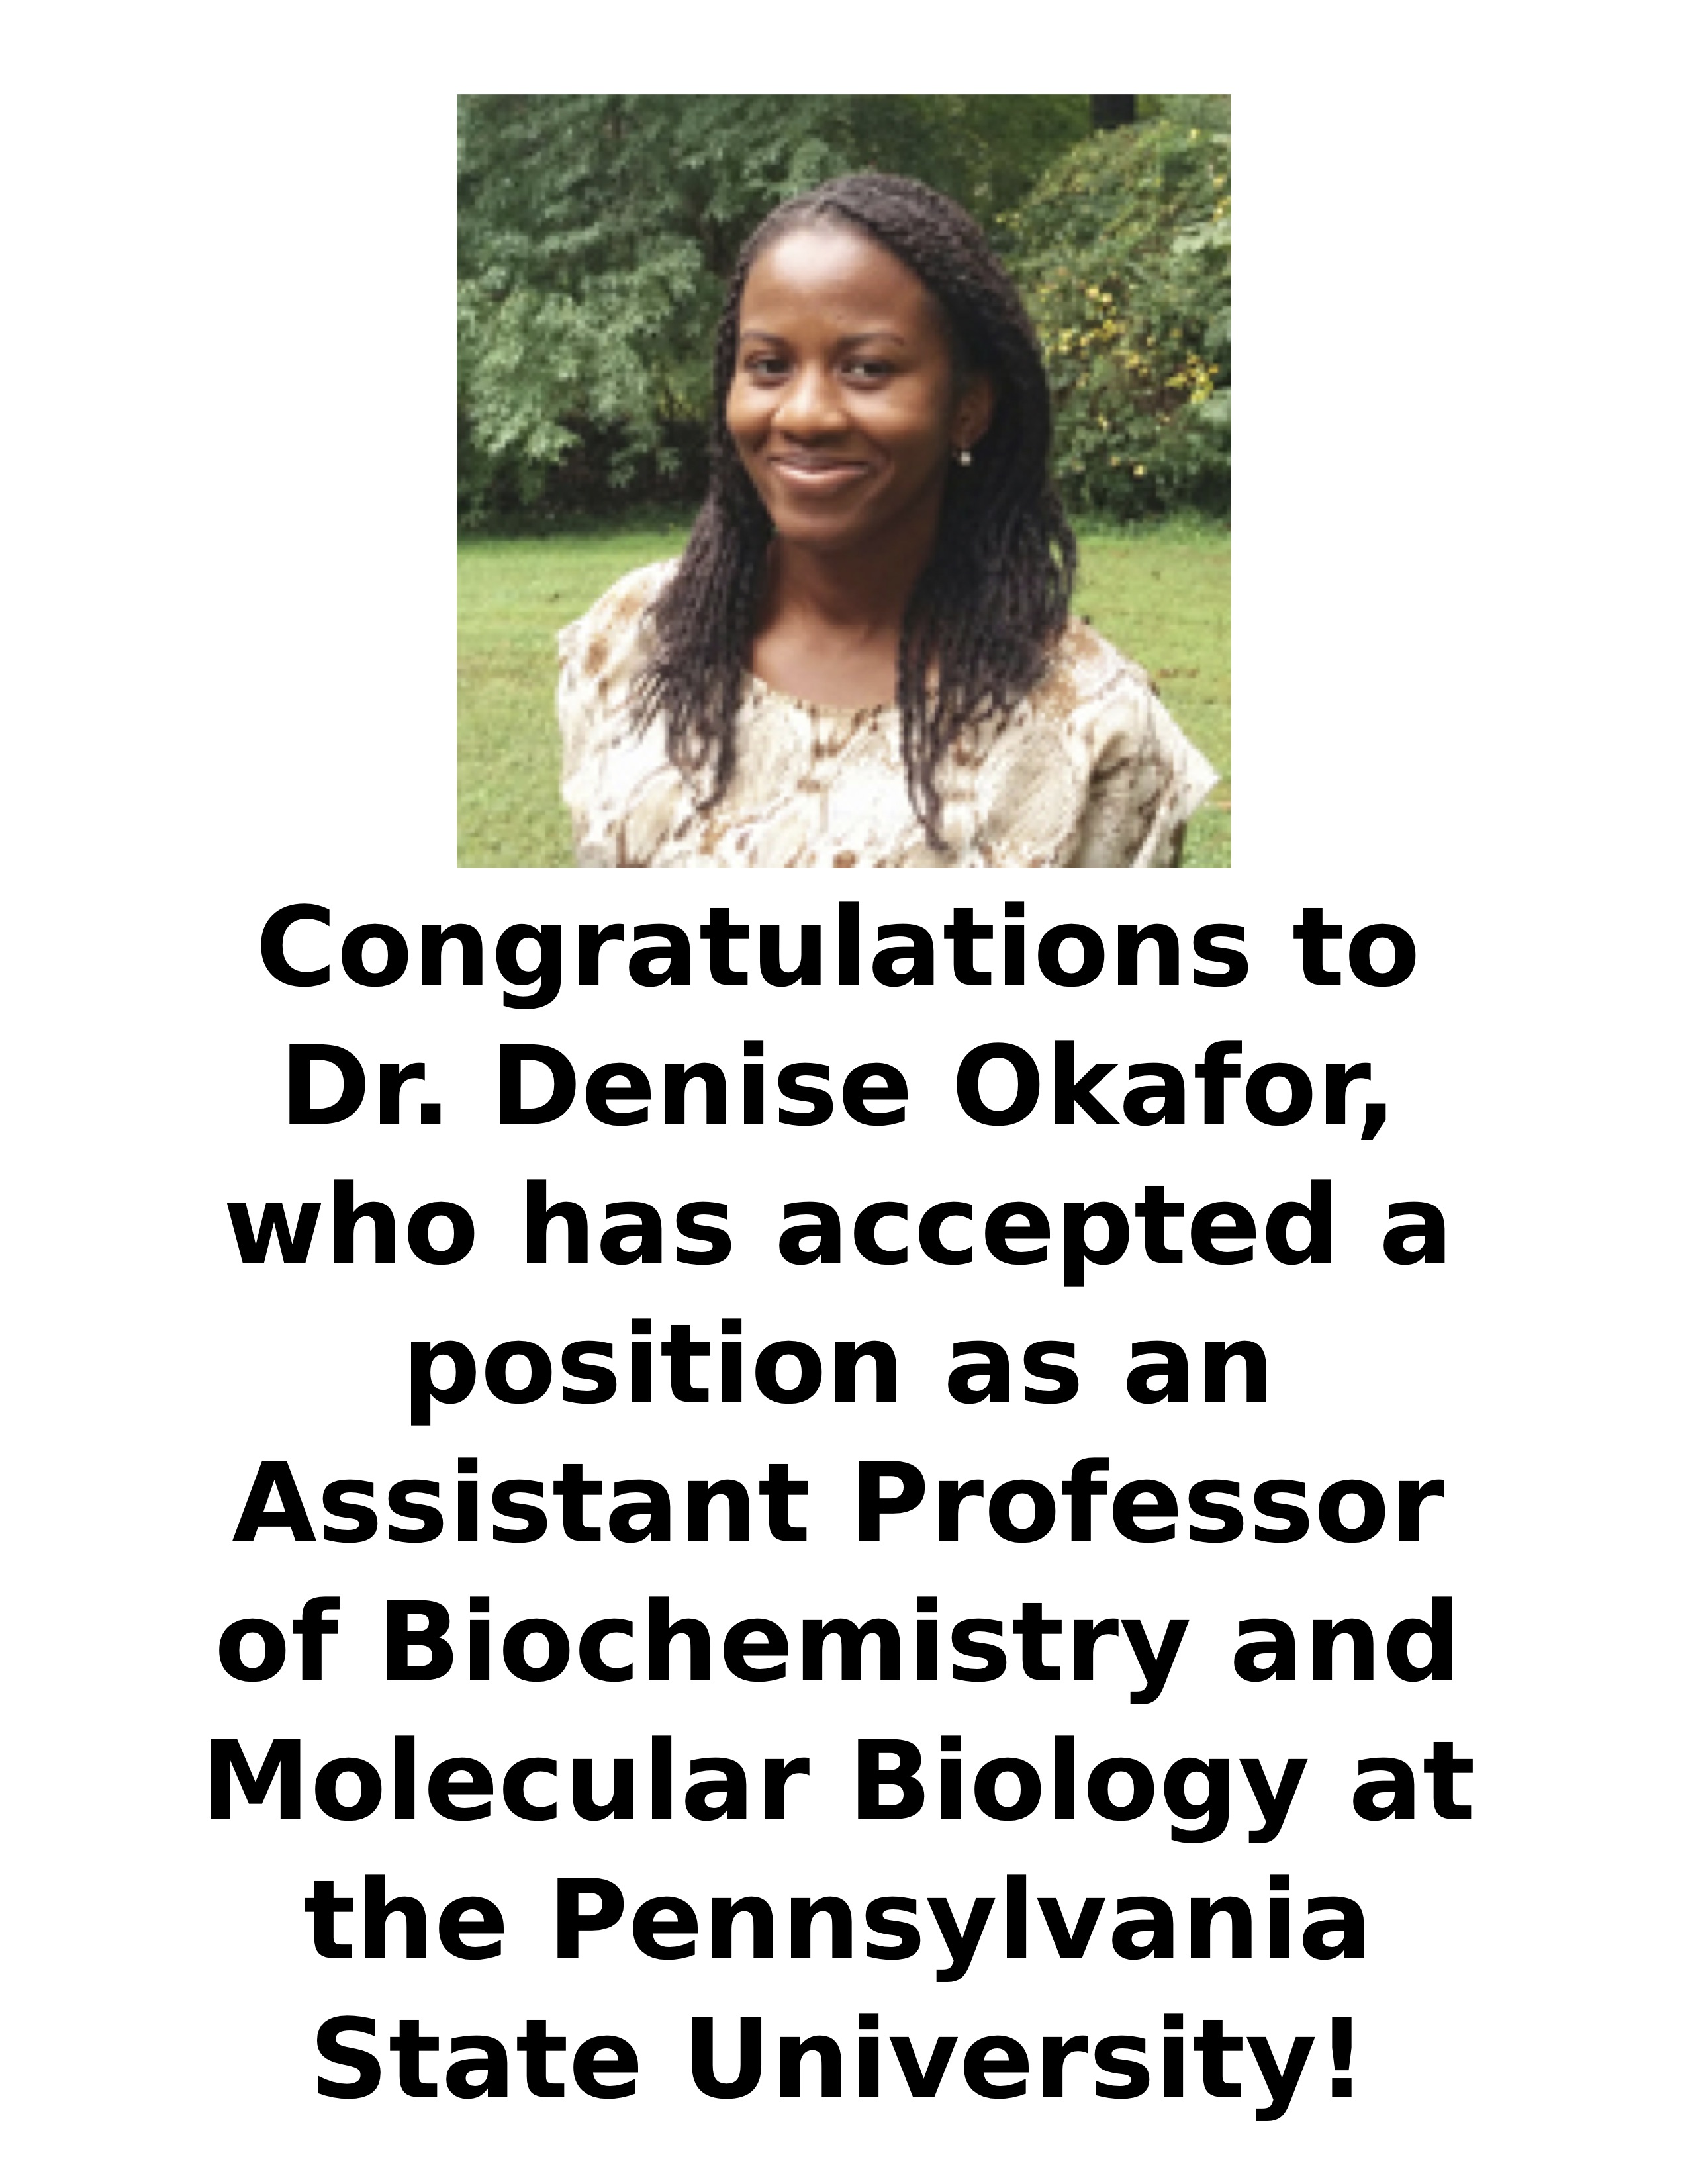 Denise Okafor New Position